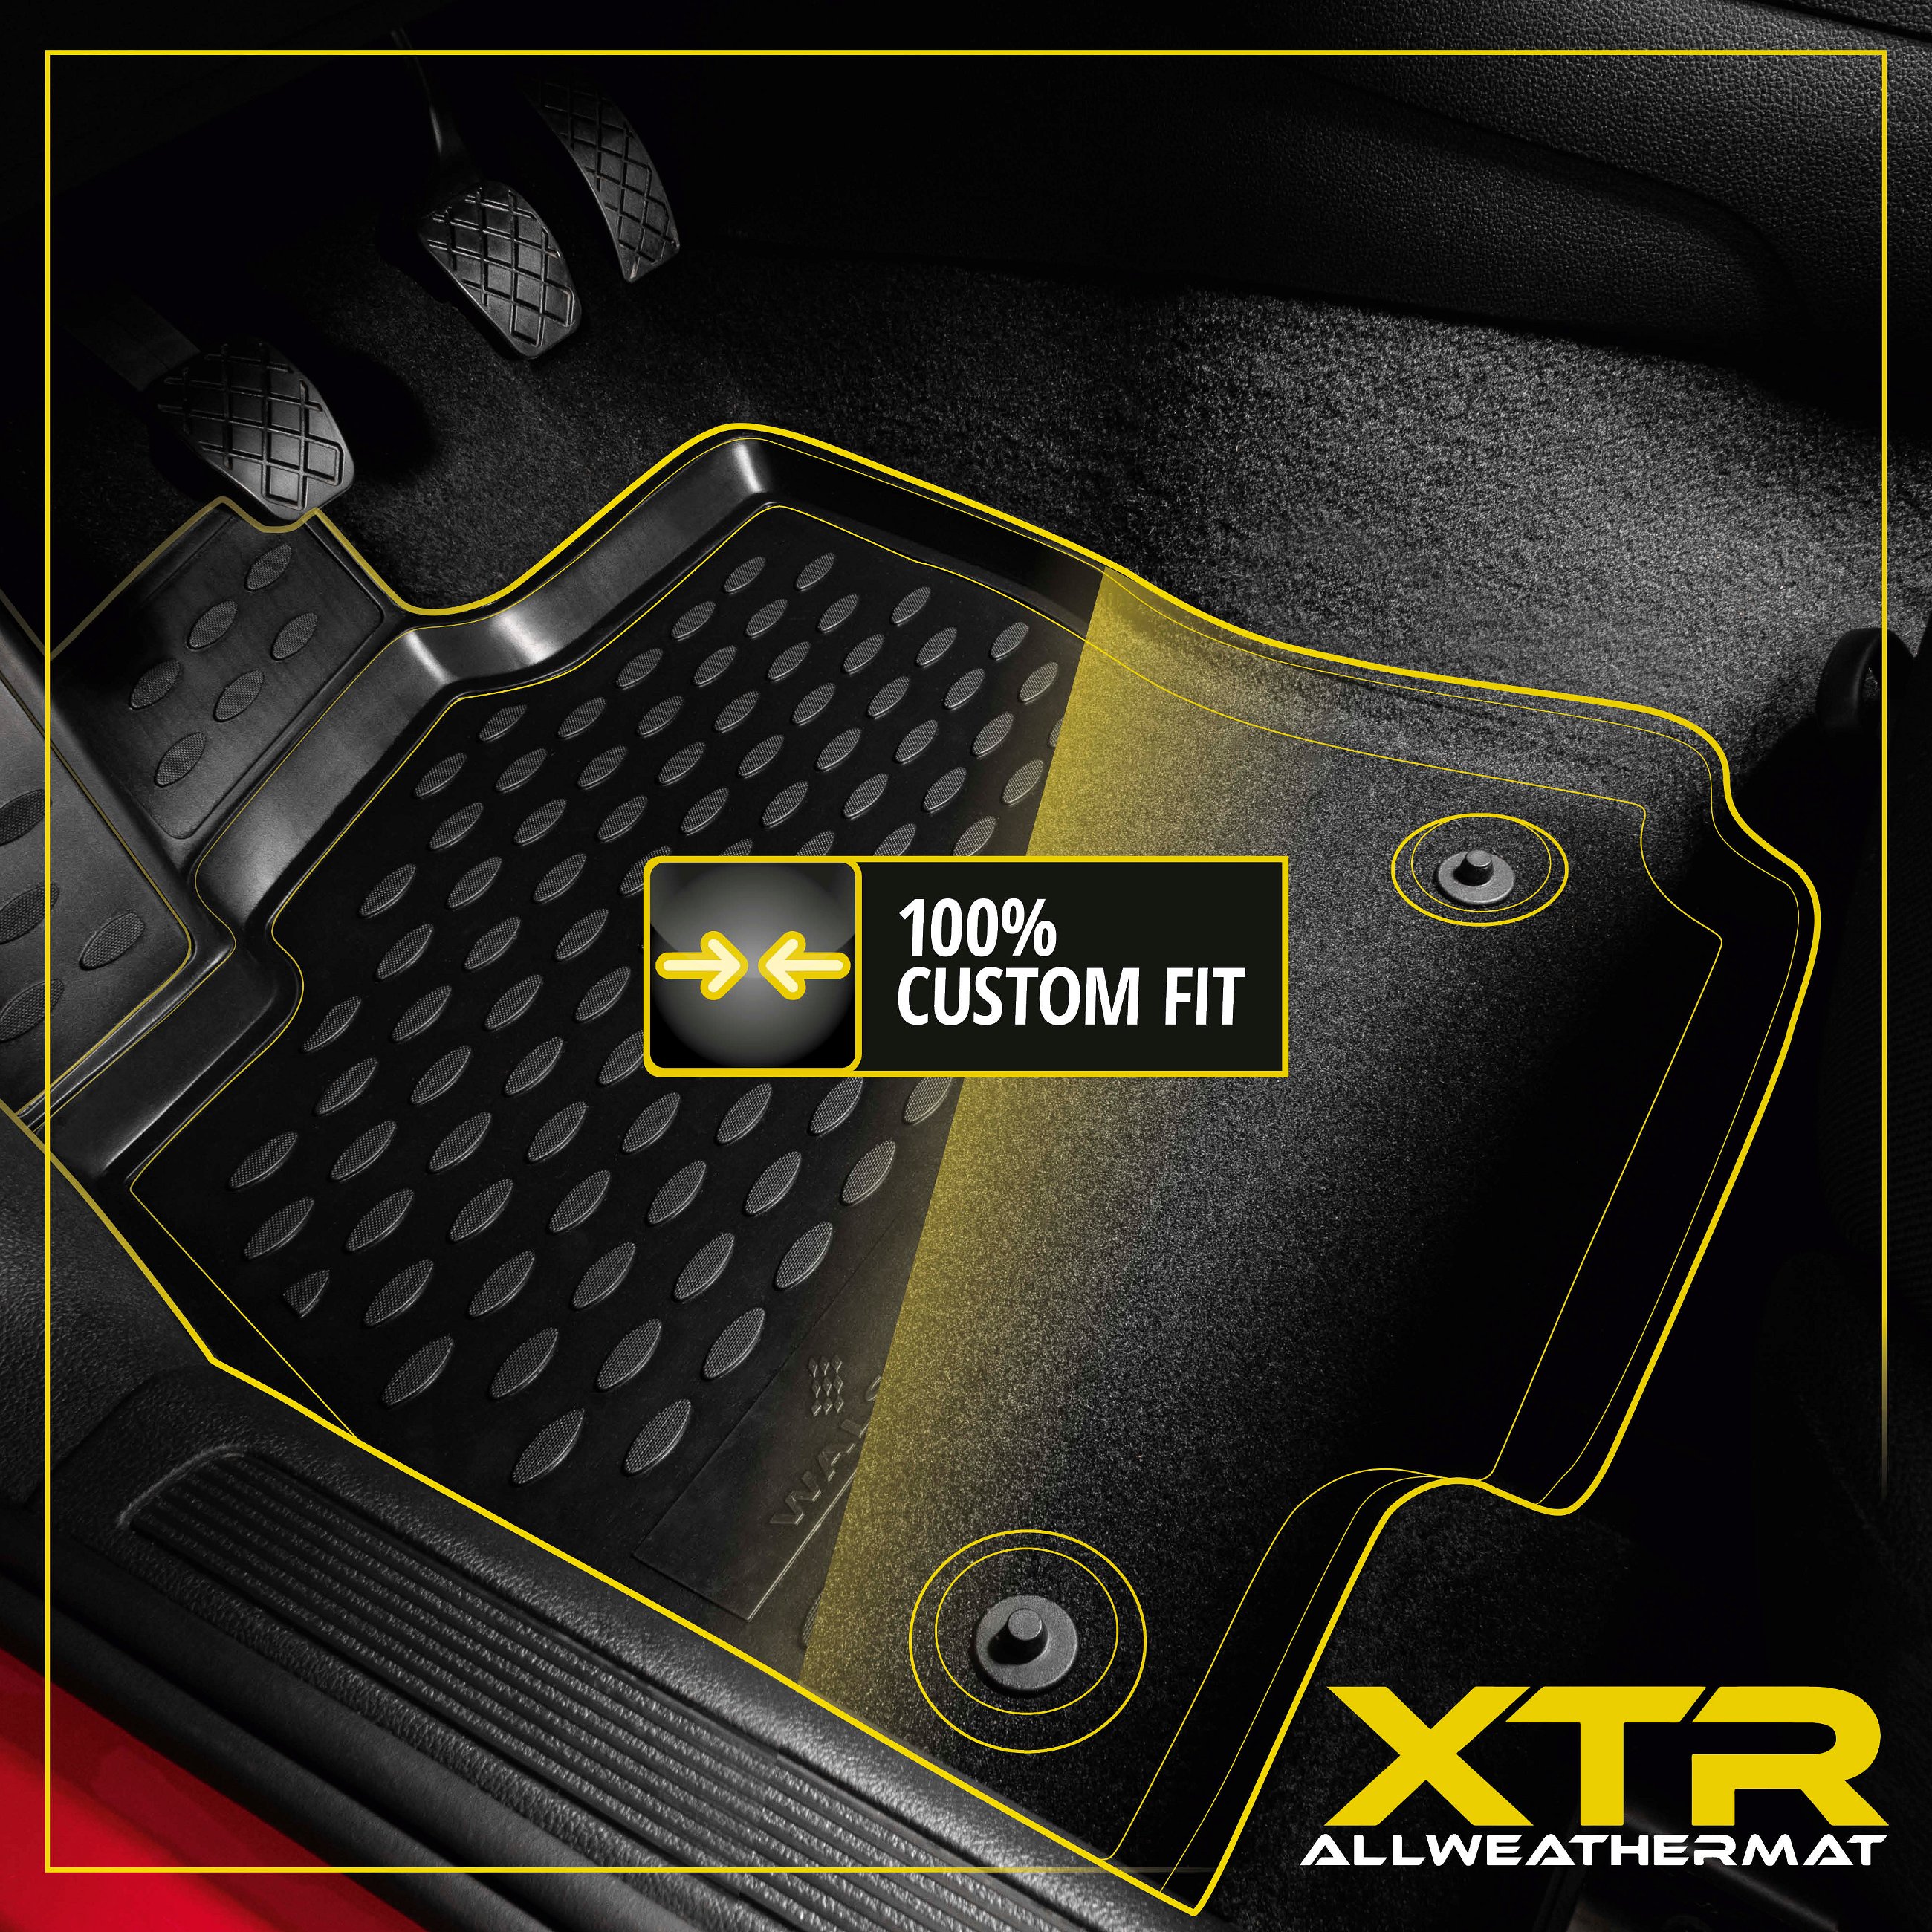 XTR Rubber Mats for Toyota Auris hatchback 10/2012 - 12/2018